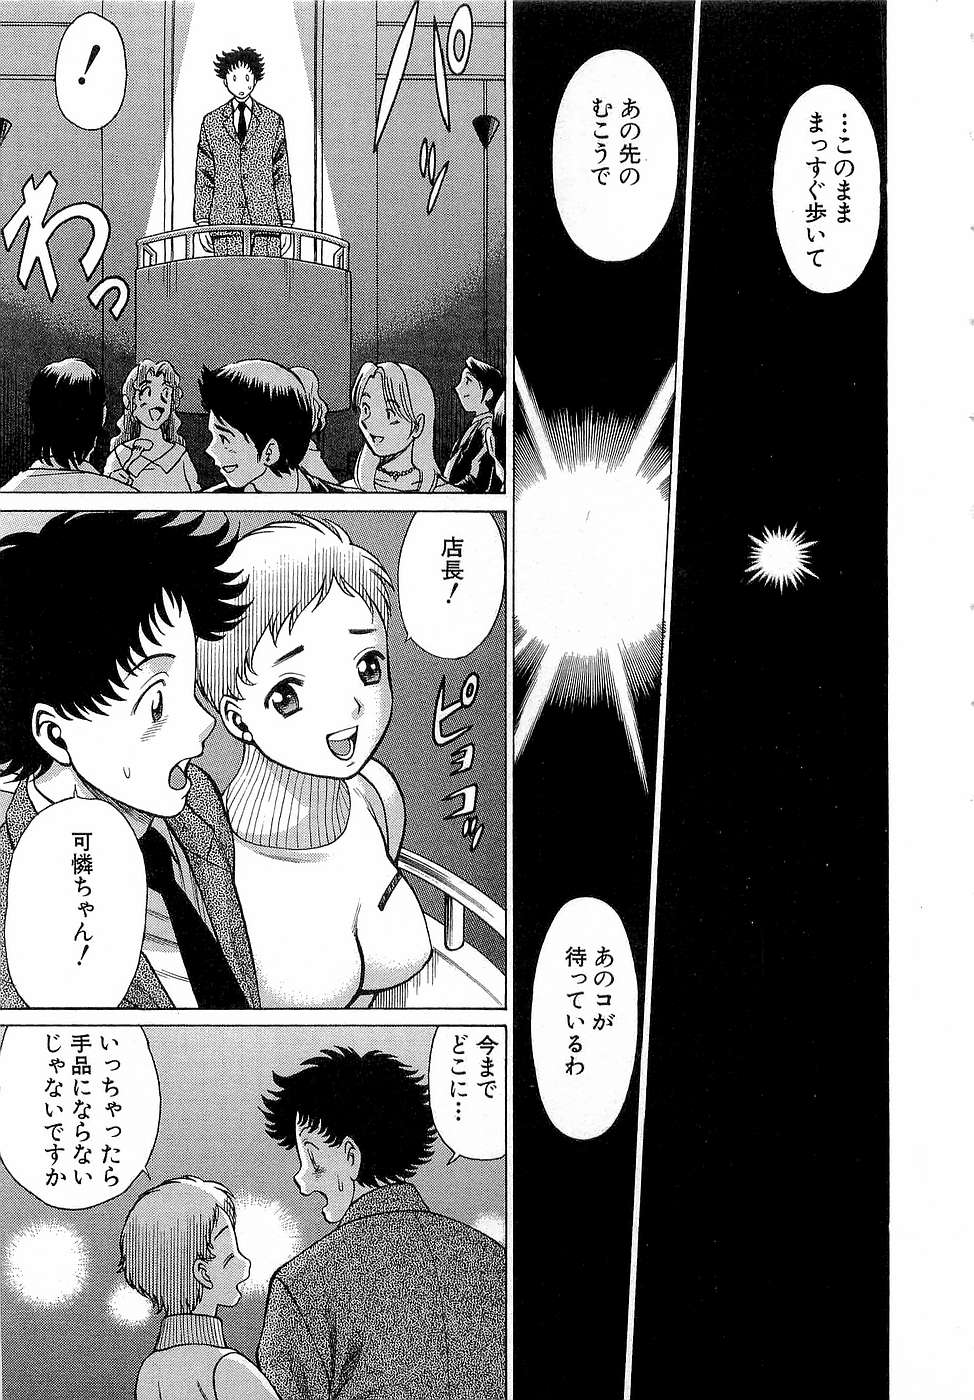 [Tamaki Nozomu] Nanairo Karen x3 Cosplay Complex page 30 full